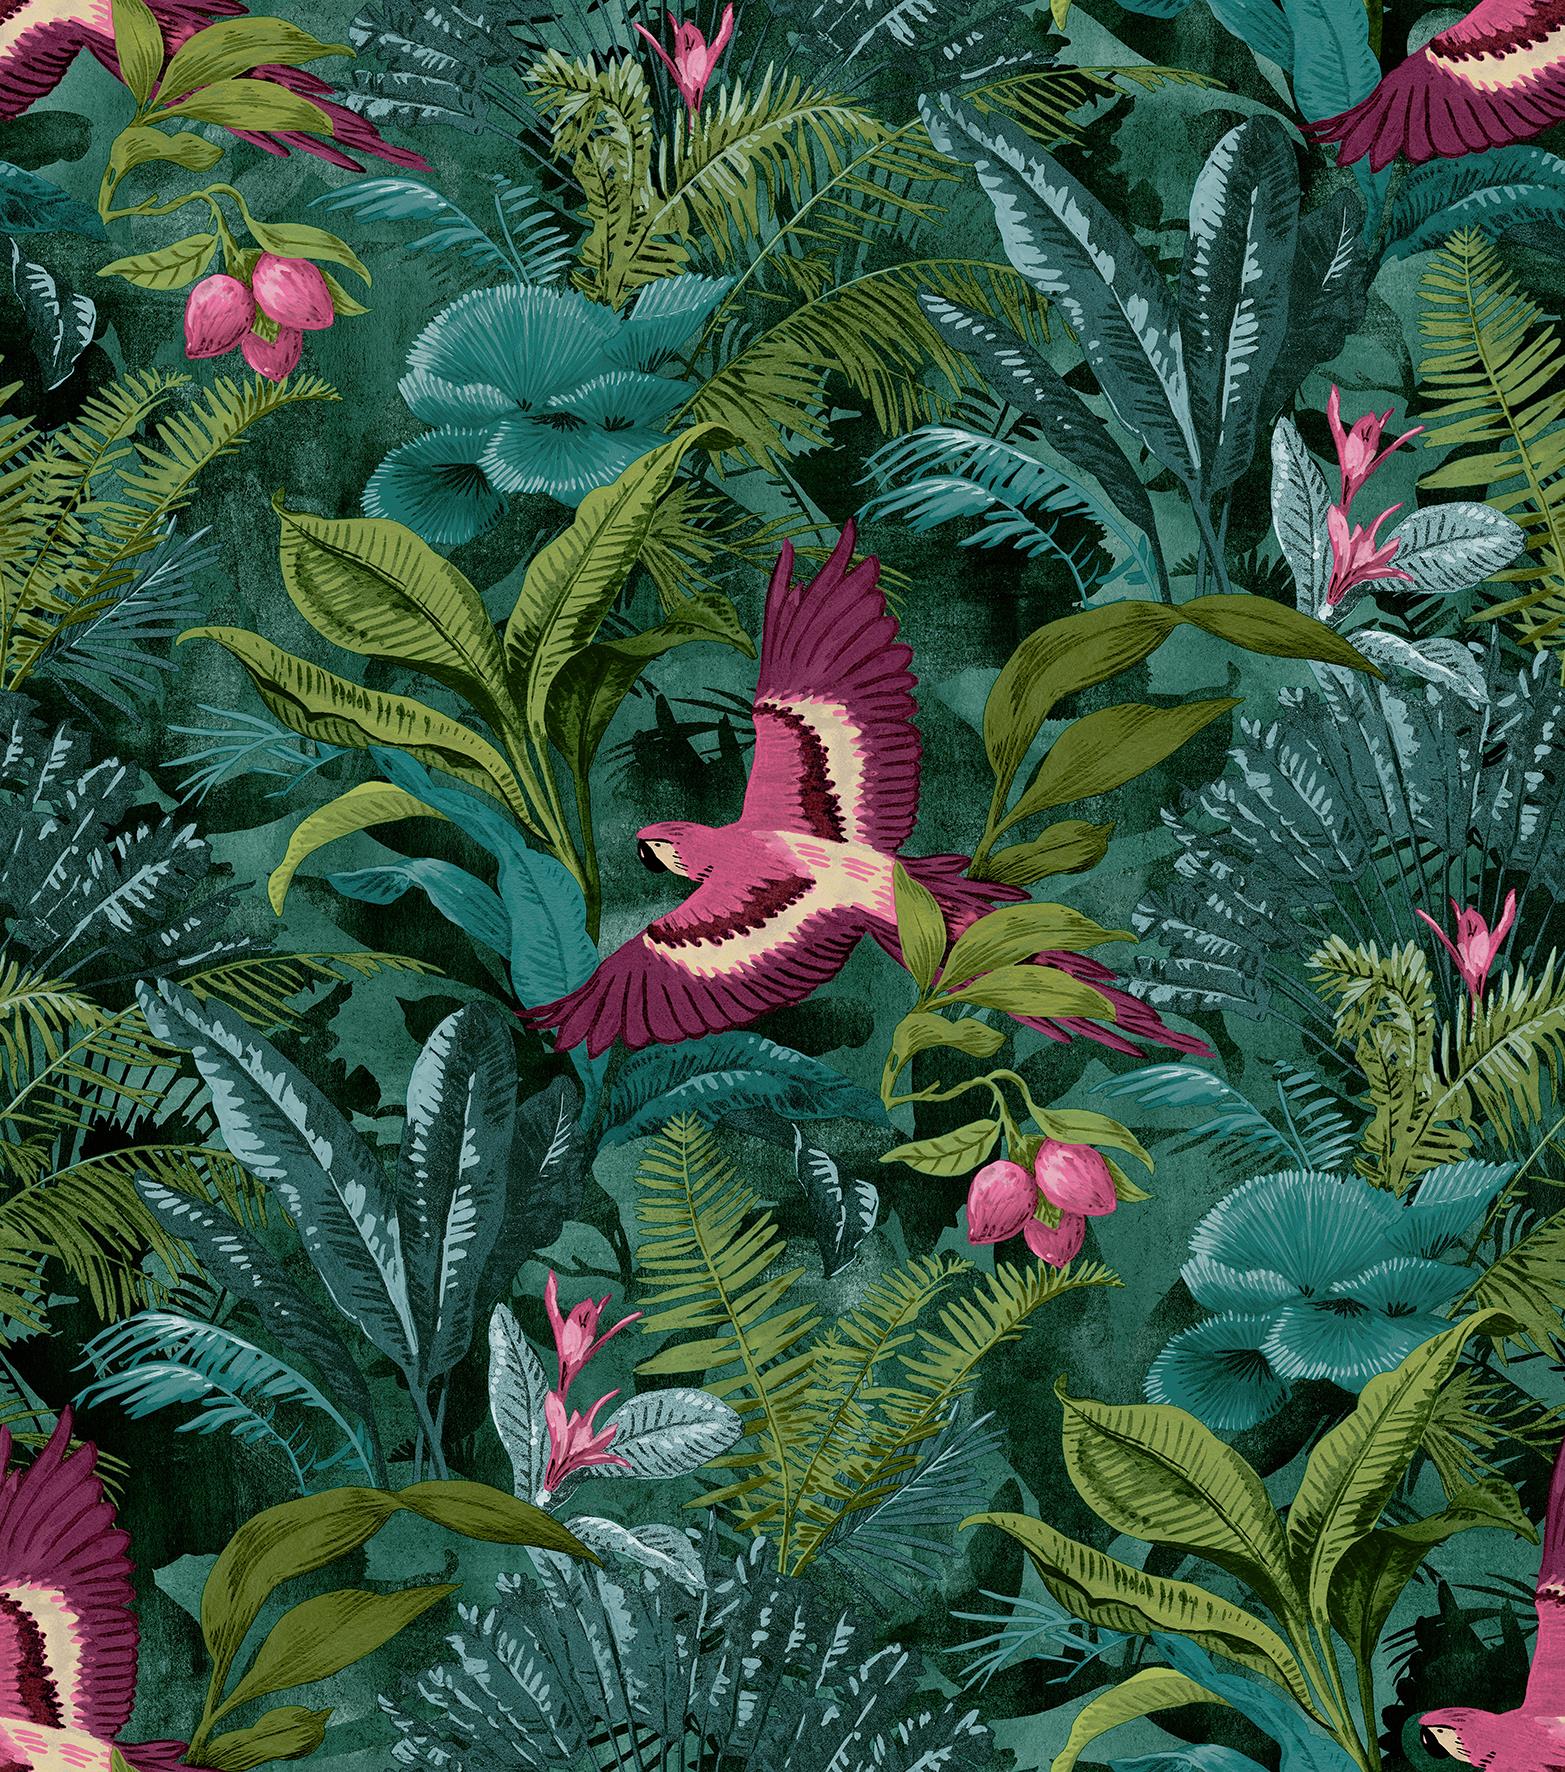 Rasch Tropical Rainforest Wallpaper Botanical Floral Birds Jungle